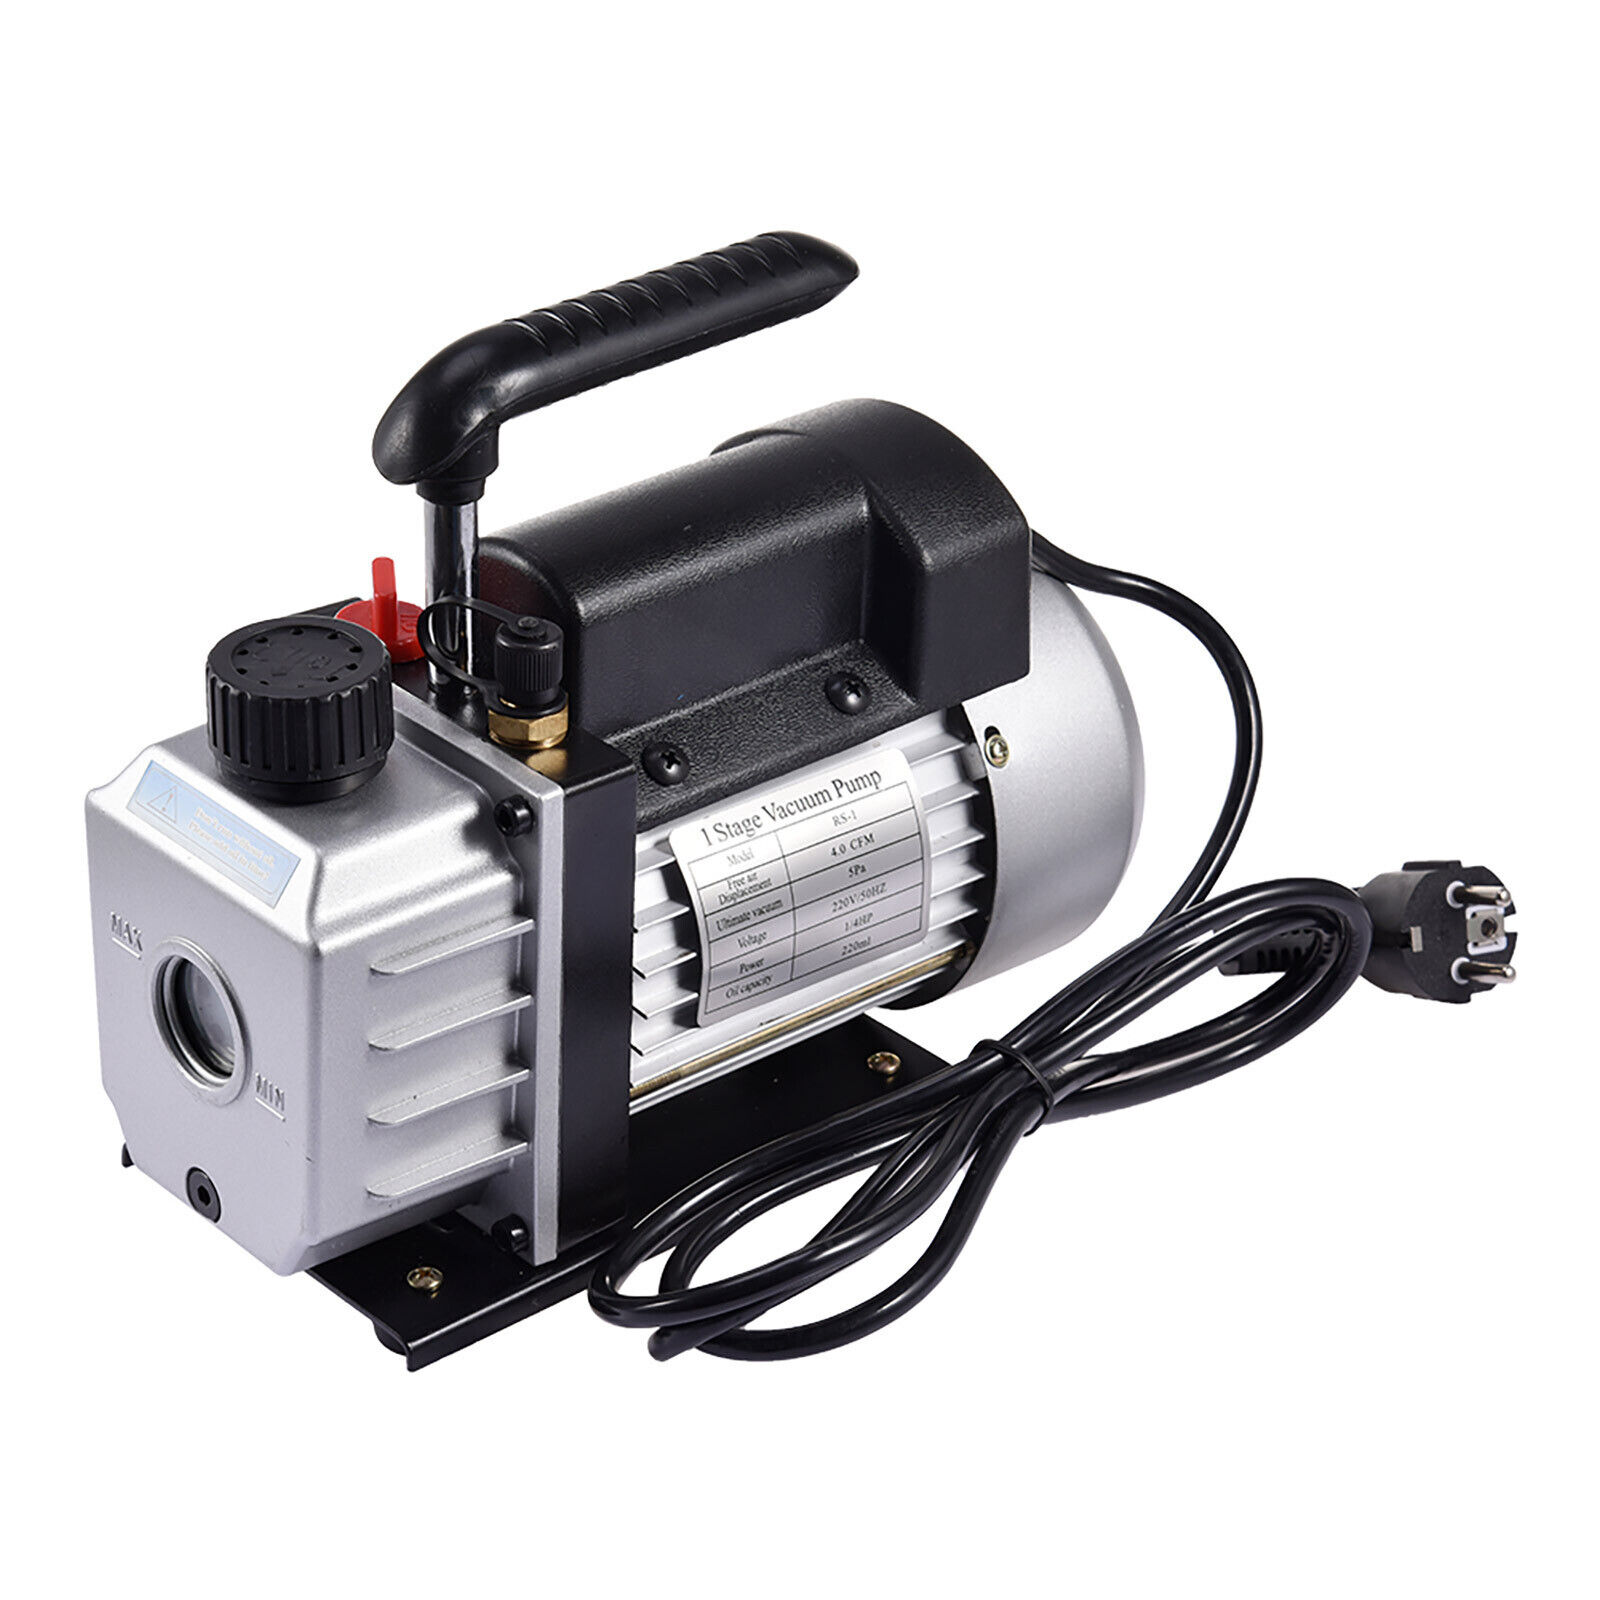 Refrigerating fluid-R134A R12 R22 R502,4CFM Air Vacuum Pump with R410a R22 R404a